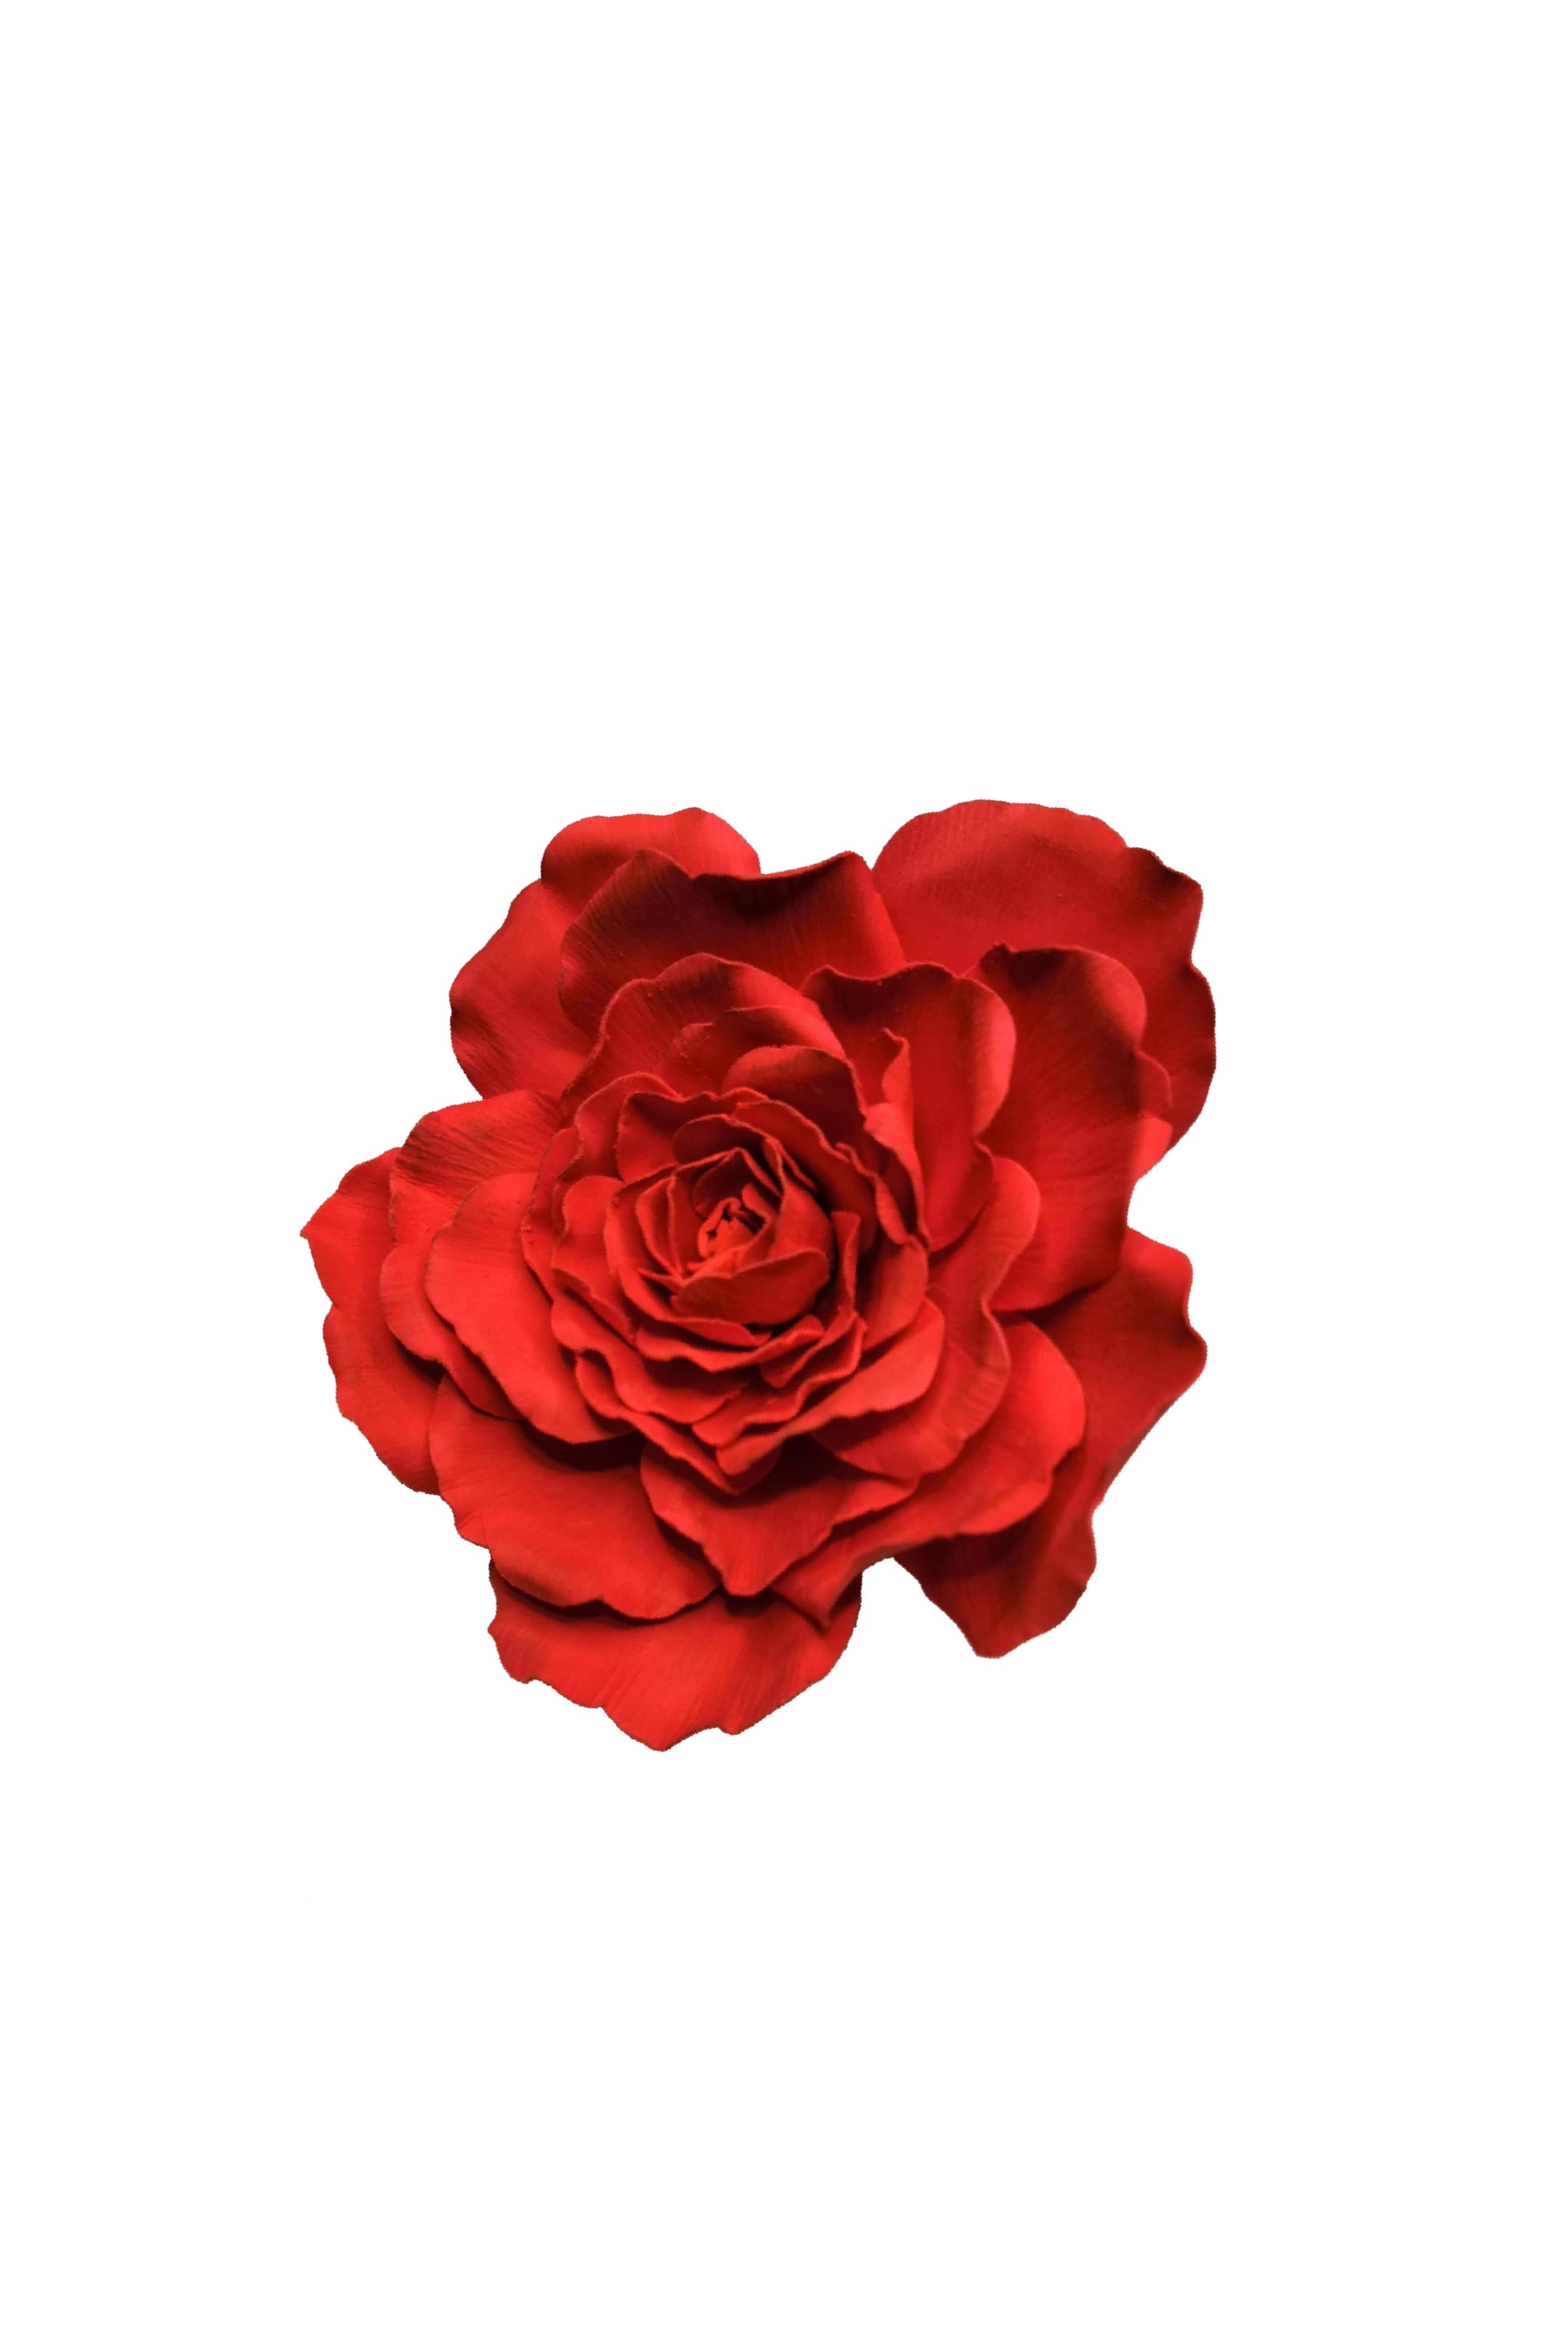 rosa rossa per galleria